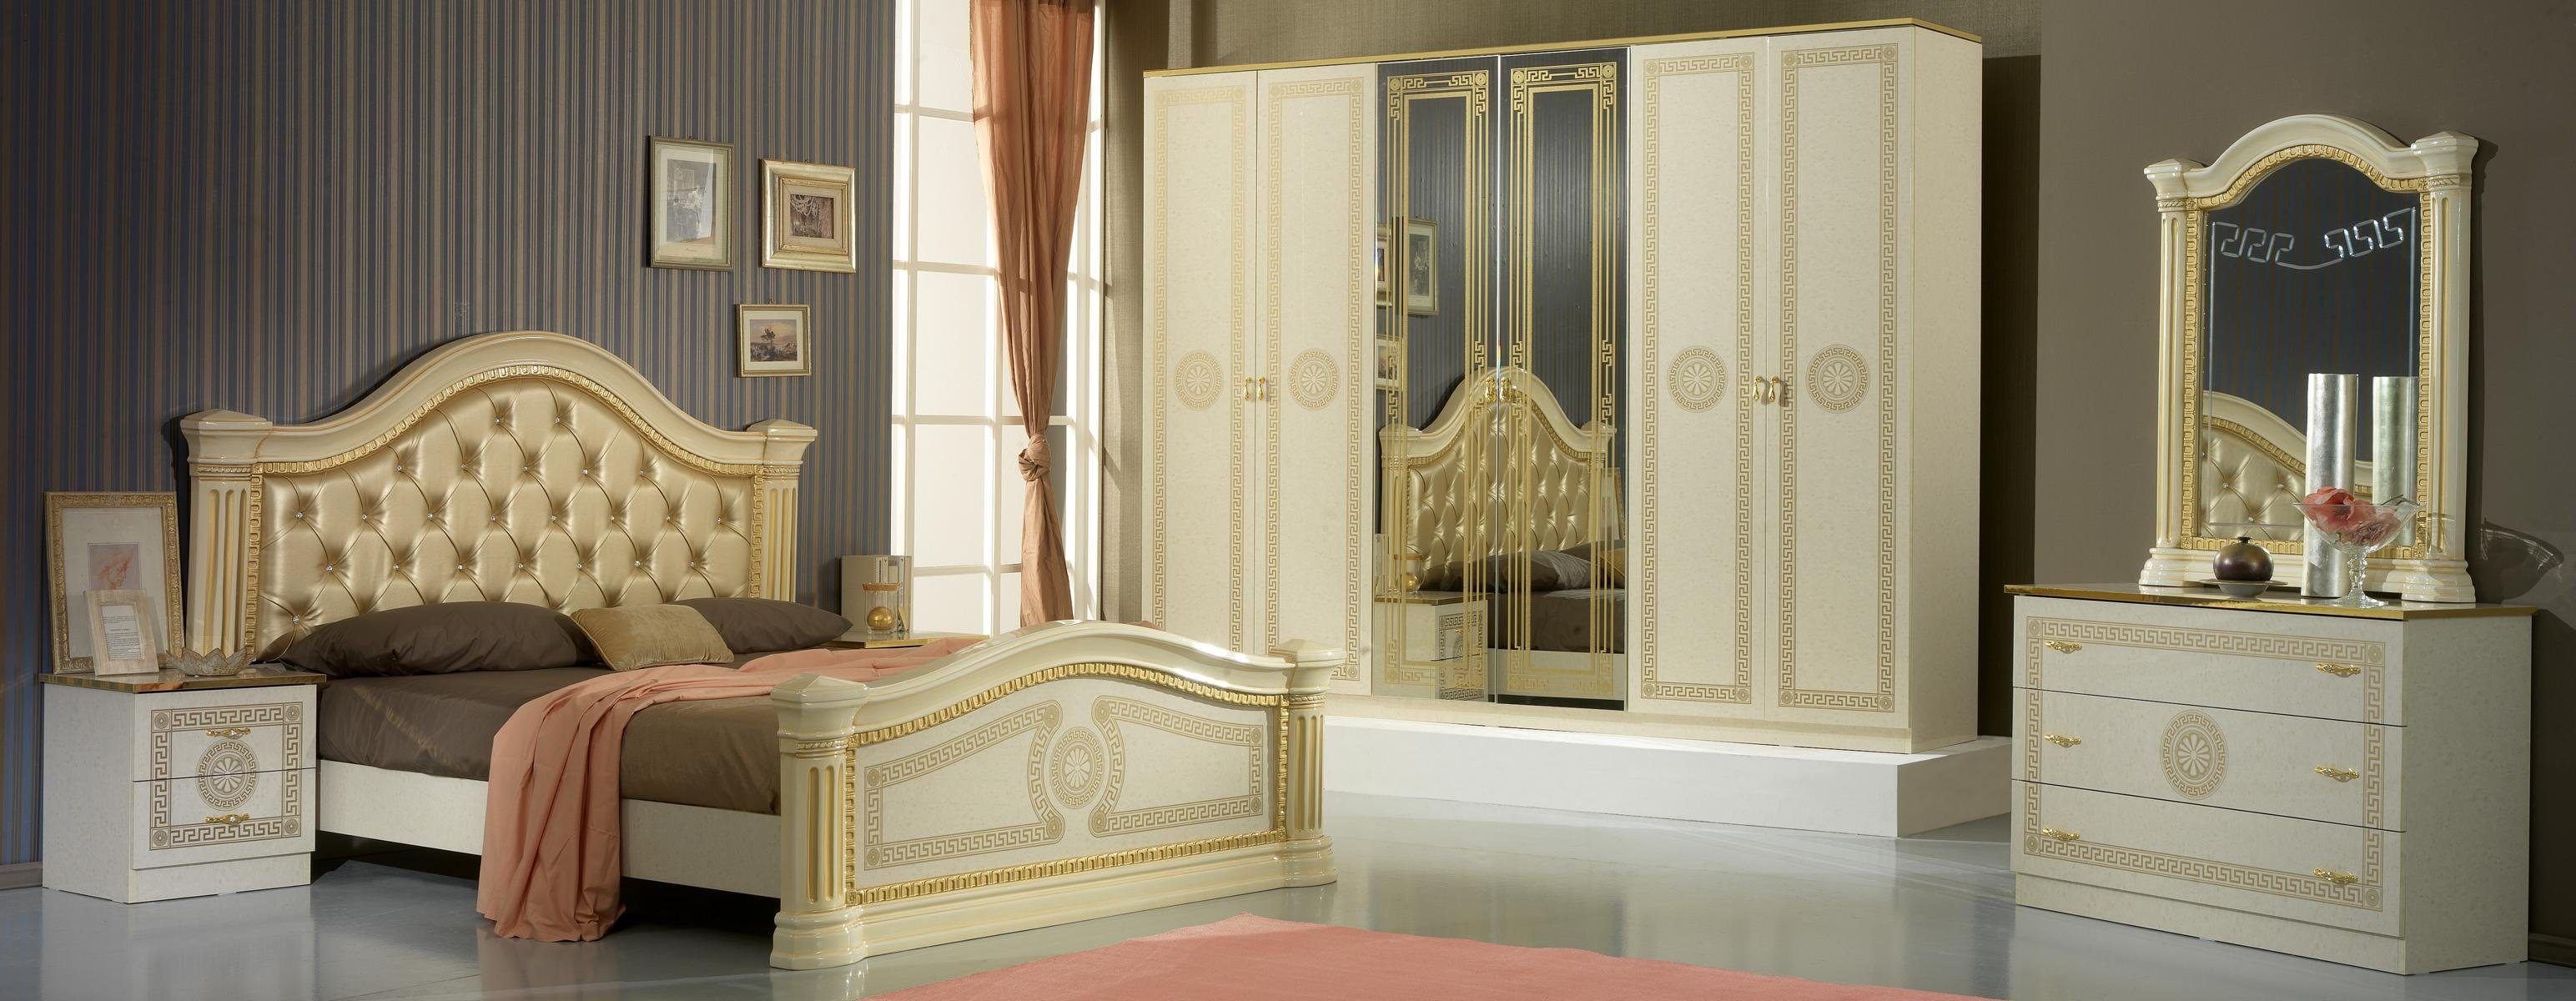 JVmoebel Schlafzimmer-Set Luxus Schlafzimmer 3tlg. Bett 2x Nachttisch Klassischer Luxus Betten